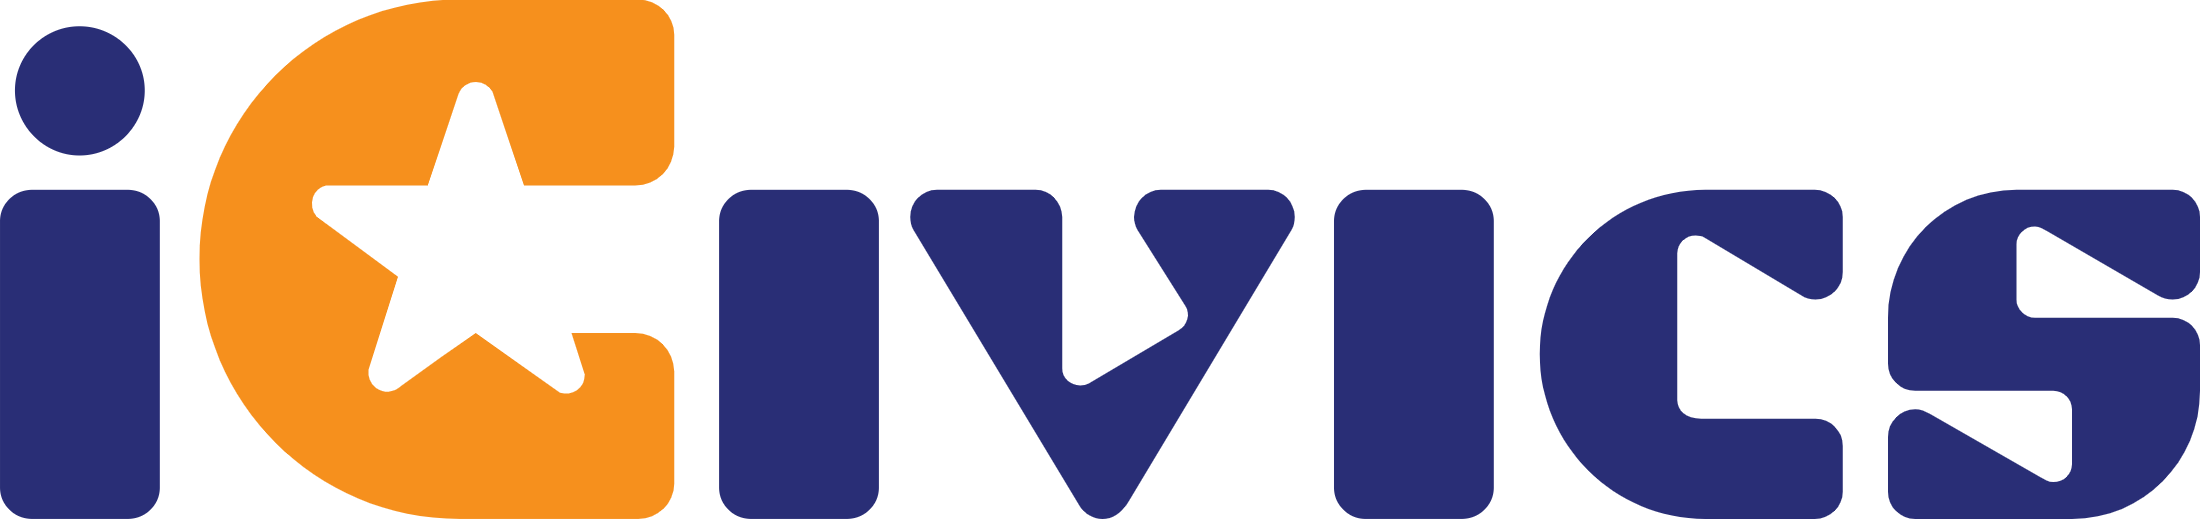 Logo of iCivics Inc.